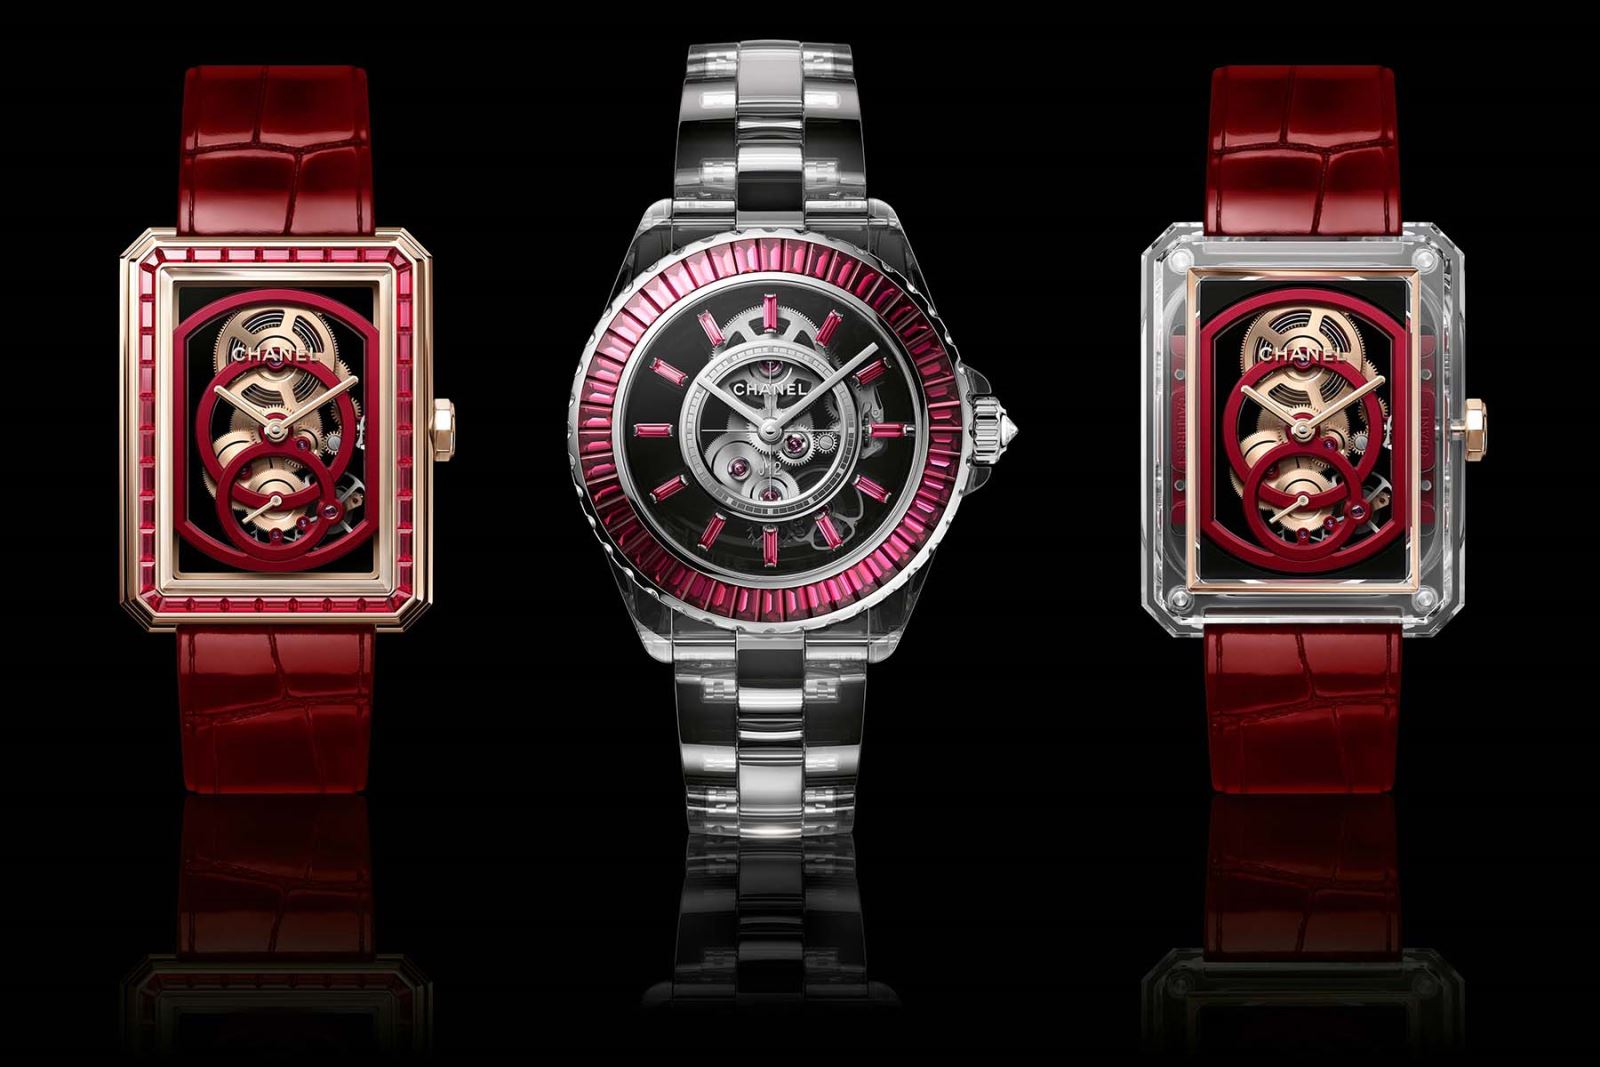 bộ sưu tập đồng hồ chanel màu đỏ ra mắt dịp tết năm 2022